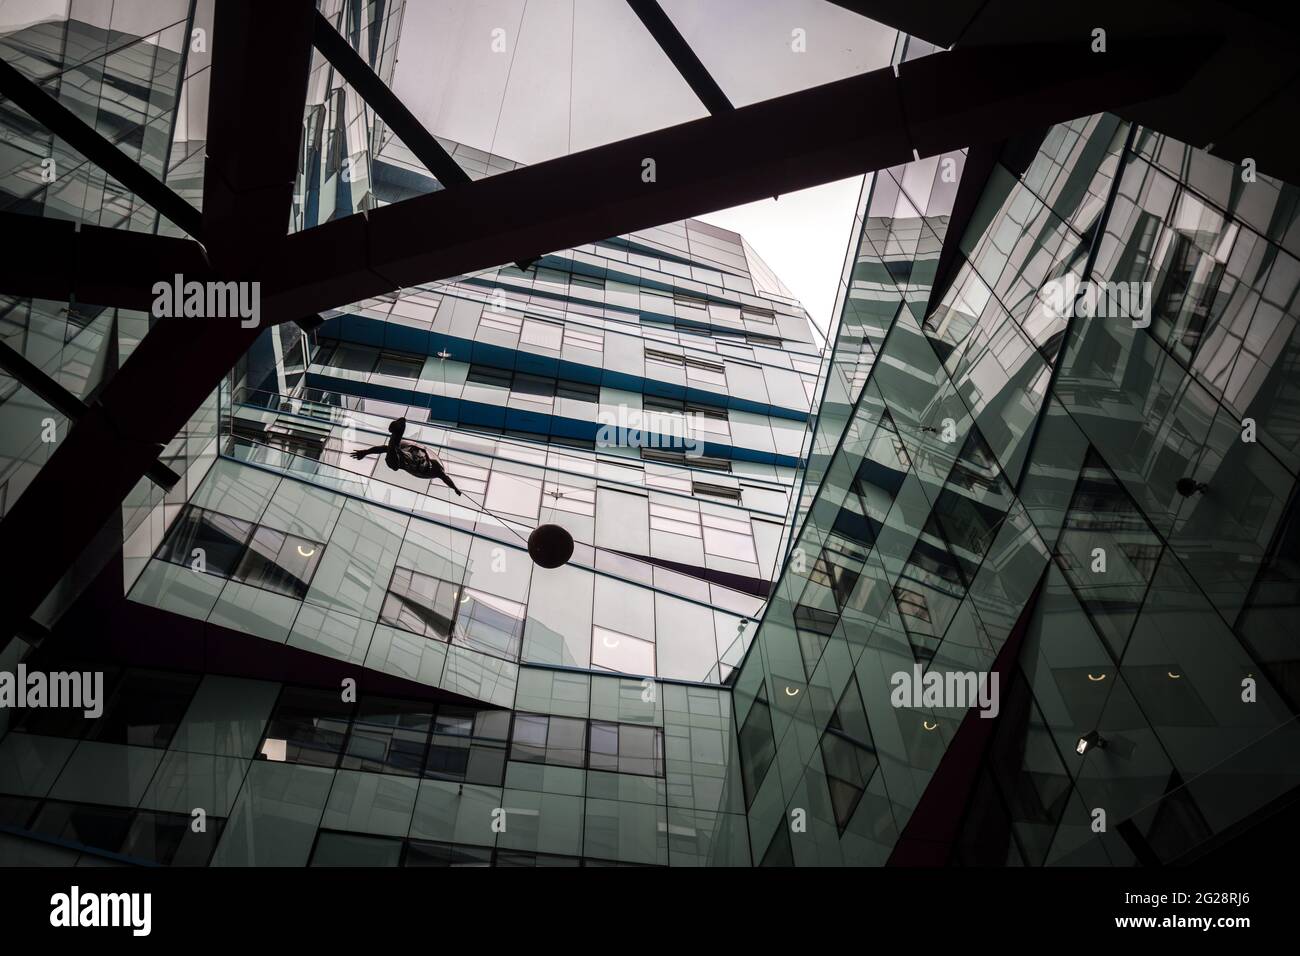 Birmingham, The Cube futuristisches Gebäude, offenes Dach mit einem Mann, der einen Ballon am Himmel hält, und Vögeln, die über Glasfenstern fliegen, einem Sturm des modernen Designs Stockfoto